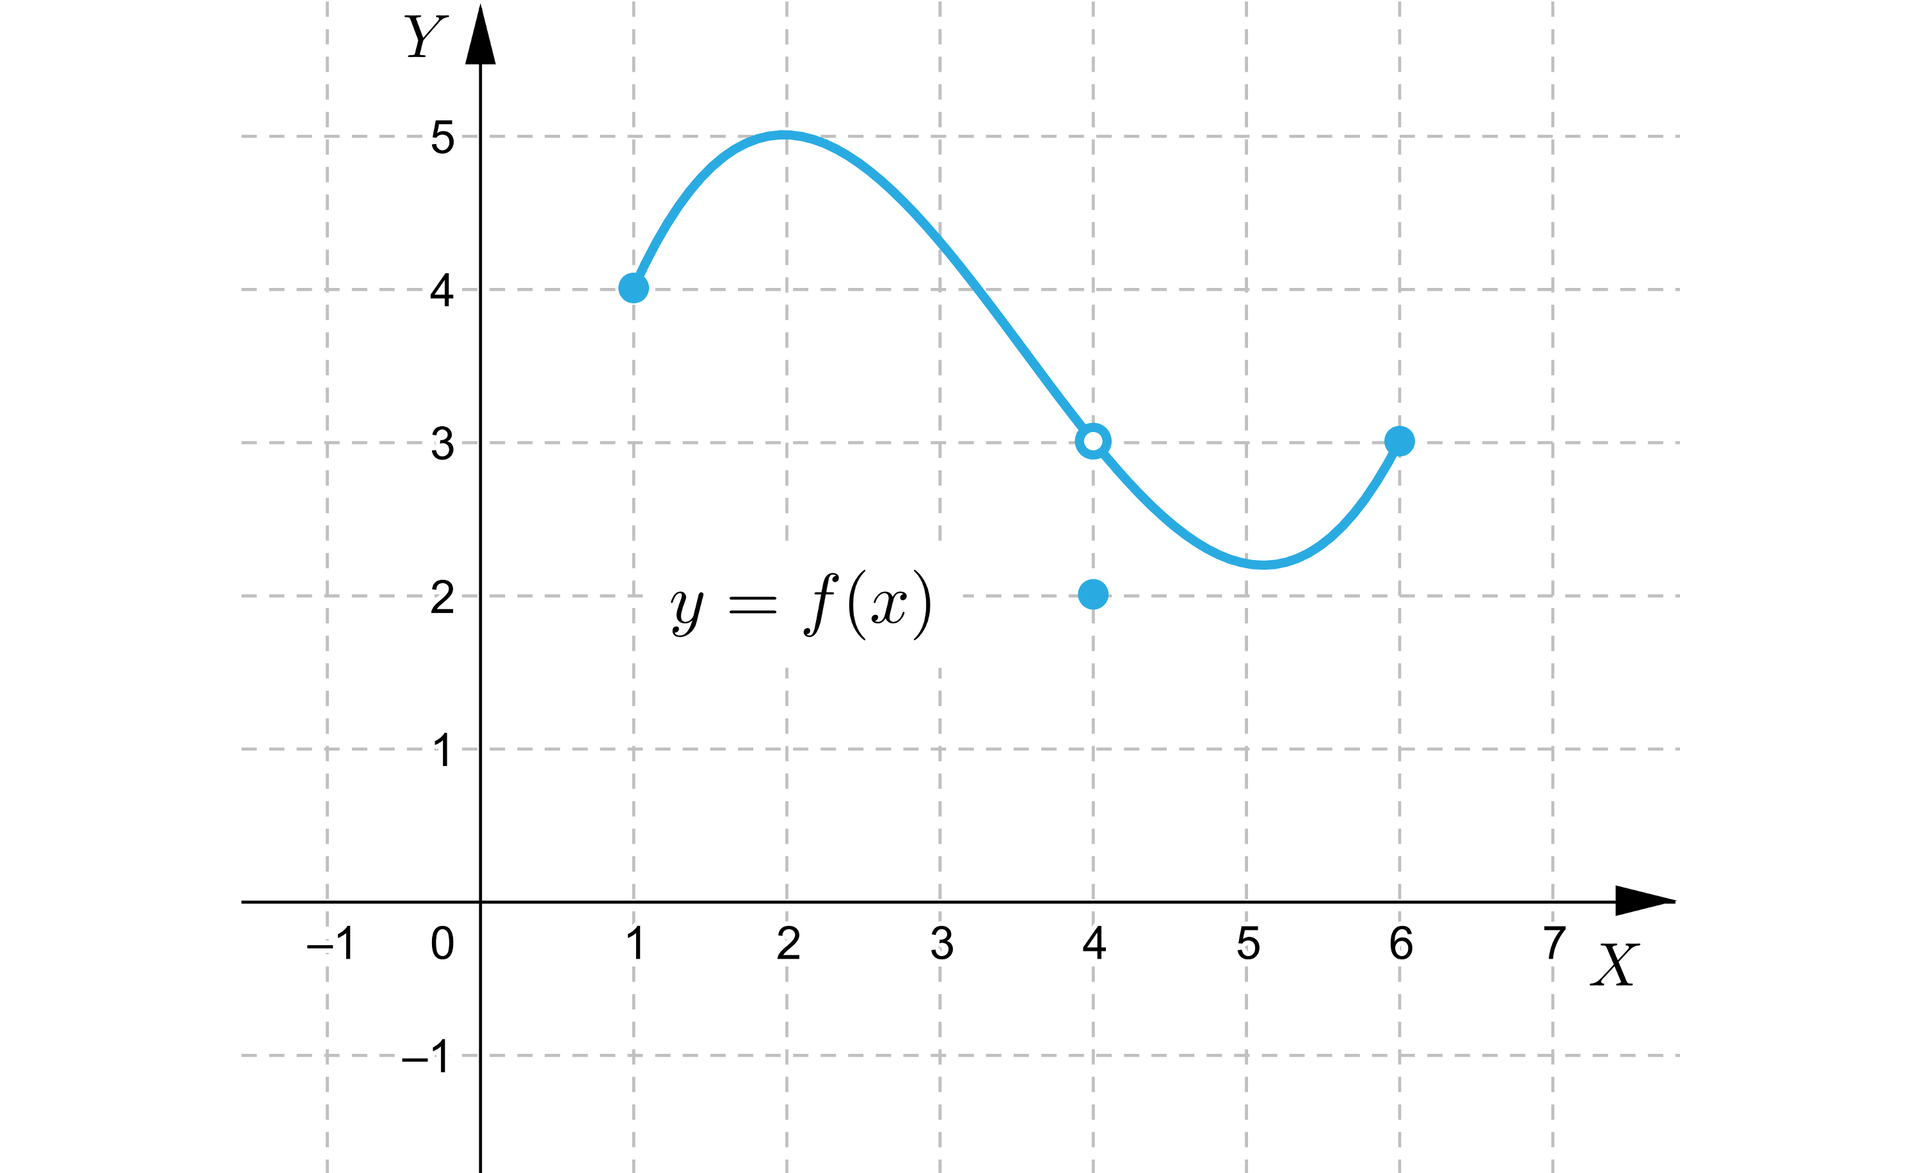 Ilustracja przedstawia układ współrzędnych z poziomą osią x od minus 1 do 7, oraz pionową osią y od minus 1 do pięć. Na płaszczyźnie narysowano wykres funkcji f składający się z punktu oraz z krzywej w kształcie litery S ułożonej poziomo. Wykres rozpoczyna się w zamalowanym punkcie o współrzędnych nawias jeden średnik cztery zamknięcie nawiasu, następnie biegnie po łuku przez punkt nawias dwa średnik pięć zamknięcie nawiasu do niezamalowanego punktu nawias cztery średnik dwa zamknięcie nawiasu, dalej biegnie również po łuku do zamalowanego punktu nawias sześć średnik trzy zamkniecie nawiasu. Drugą częścią wykresu jest punkt nawias cztery średnik dwa zamknięcie nawiasu. 